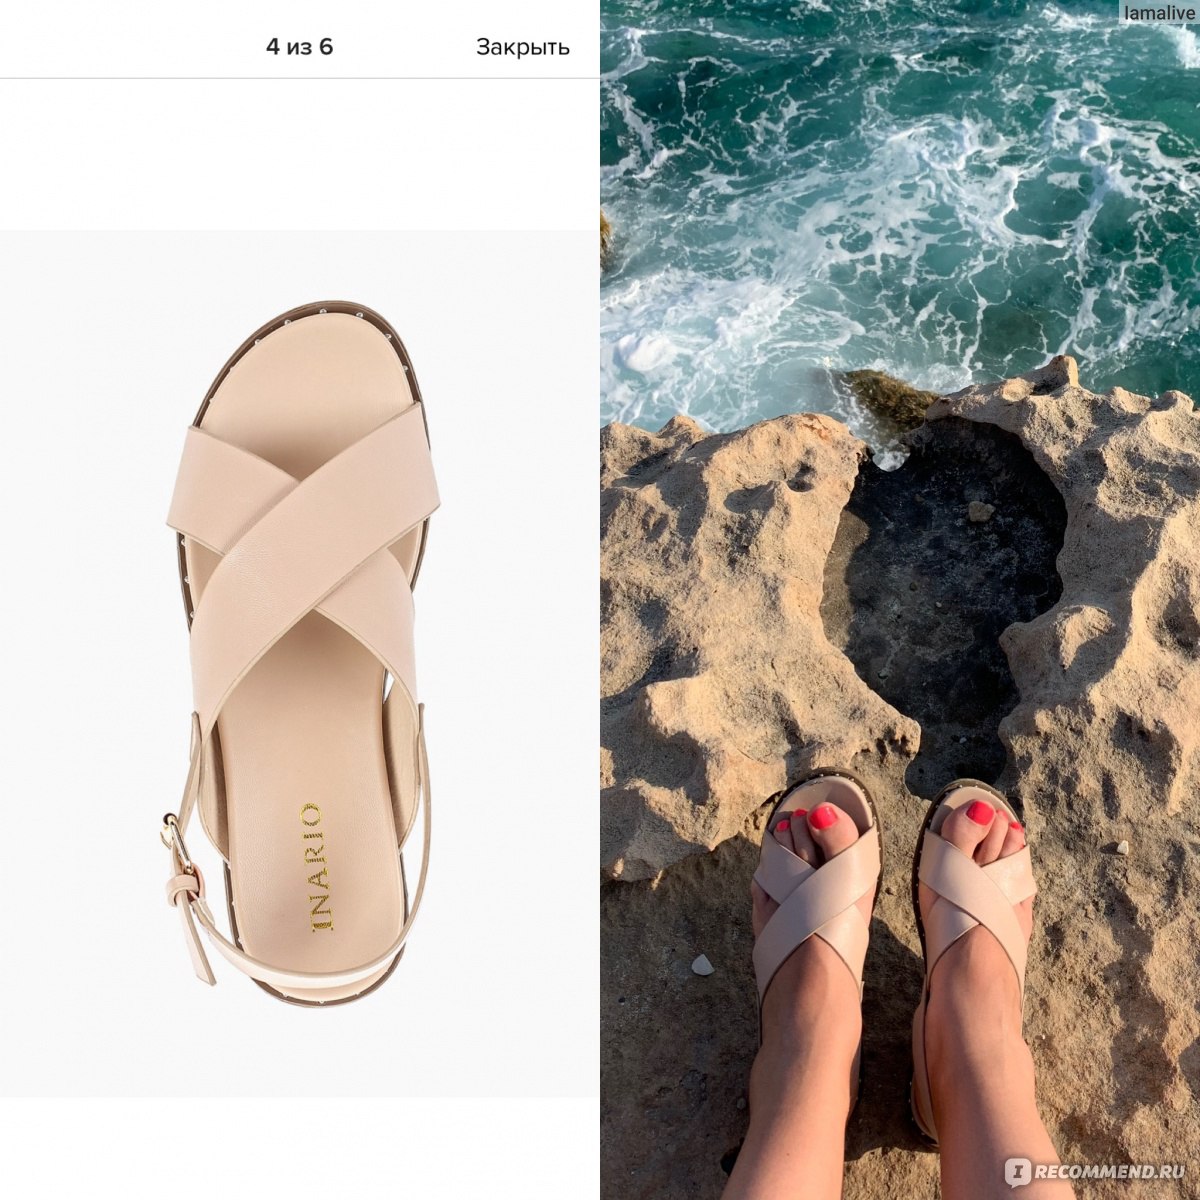 Ламода интернет-магазин одежды для женщин обувь лето